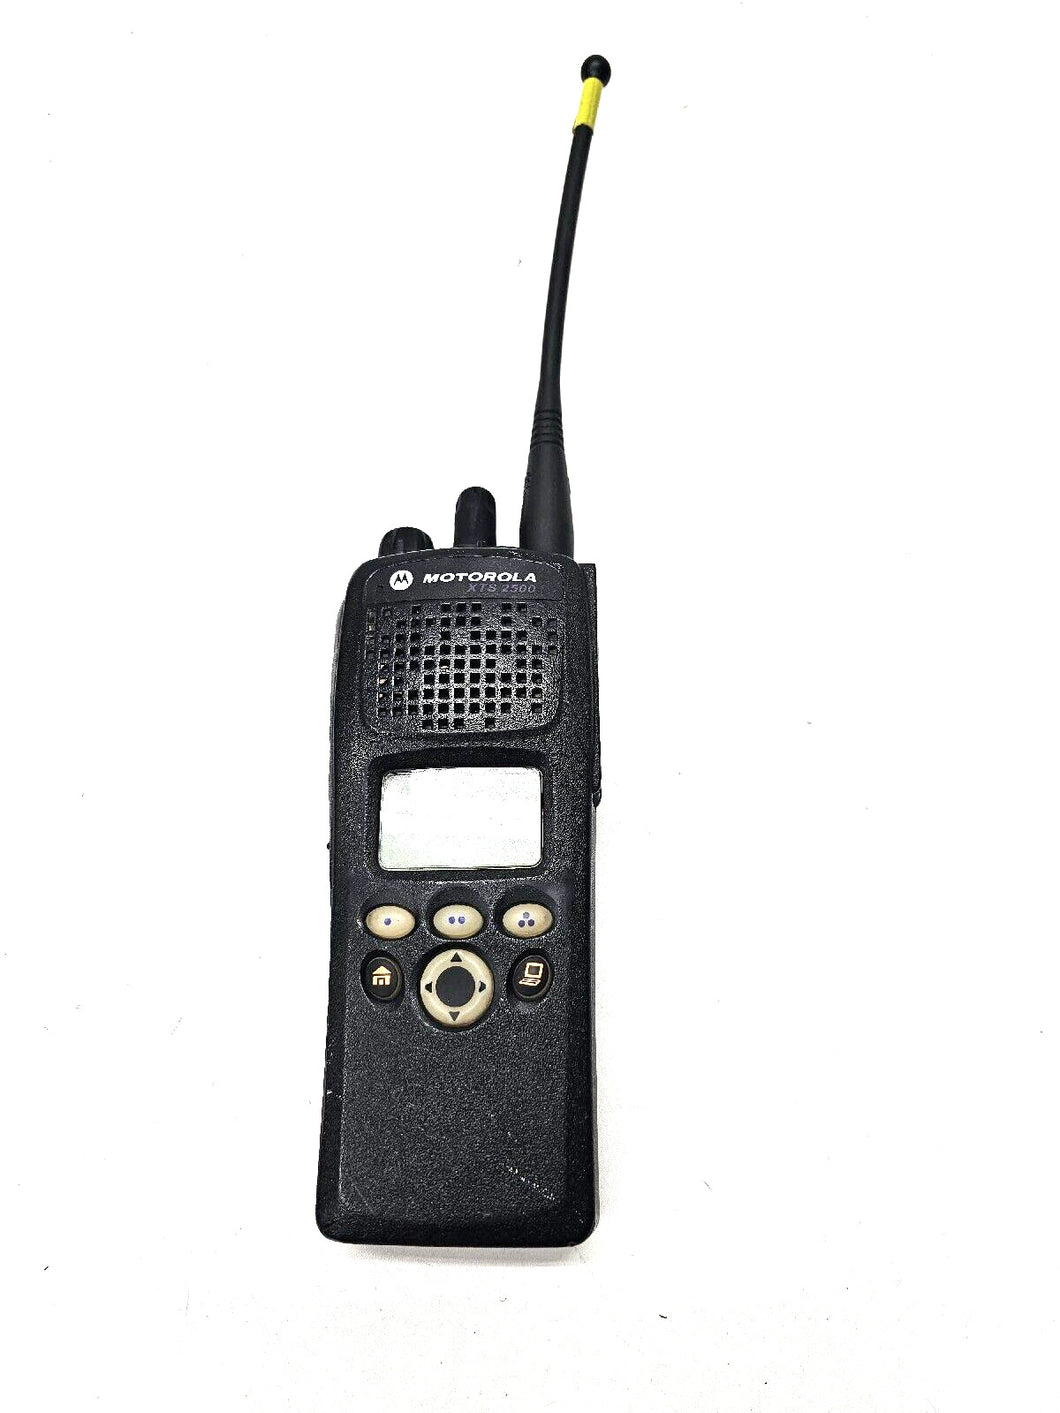 Motorola XTS2500 764-870 MHz P25 9600KB Two Way Radio H46UCF9PW6BN 800 MHz